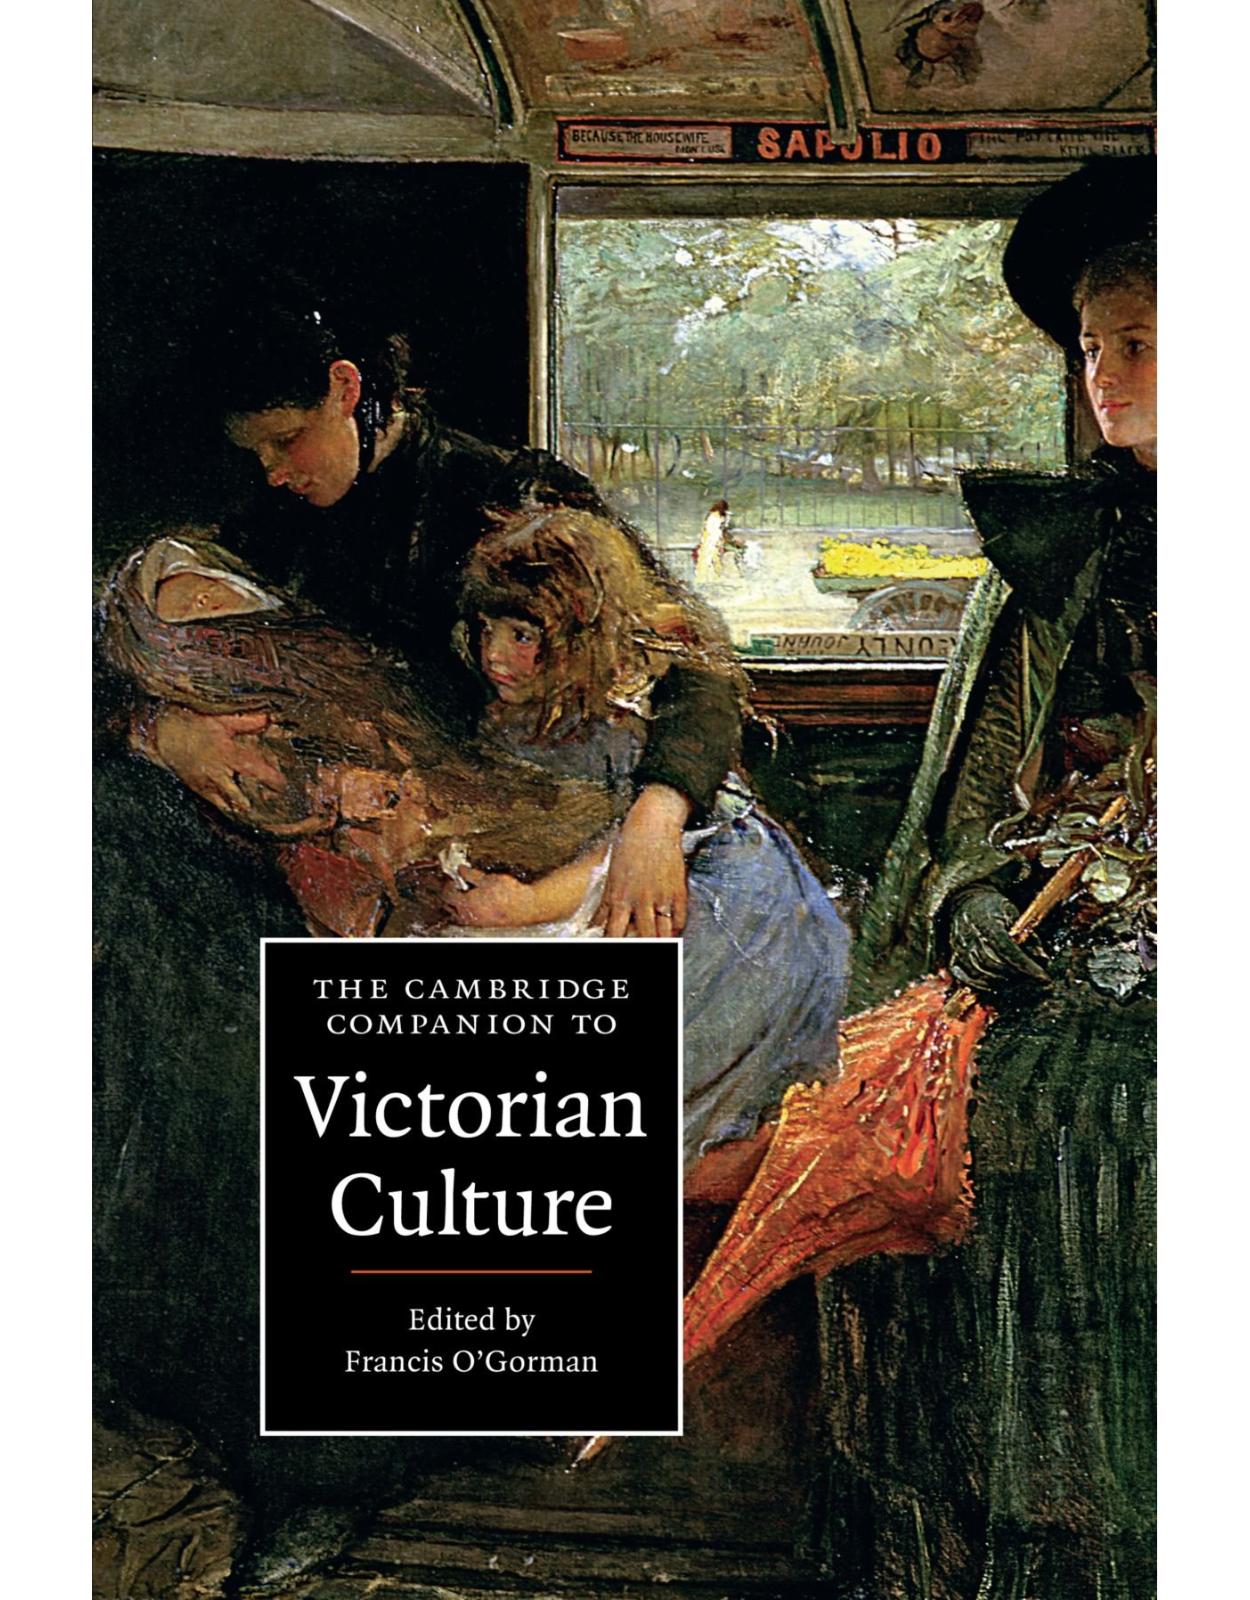 The Cambridge Companion to Victorian Culture (Cambridge Companions to Culture)